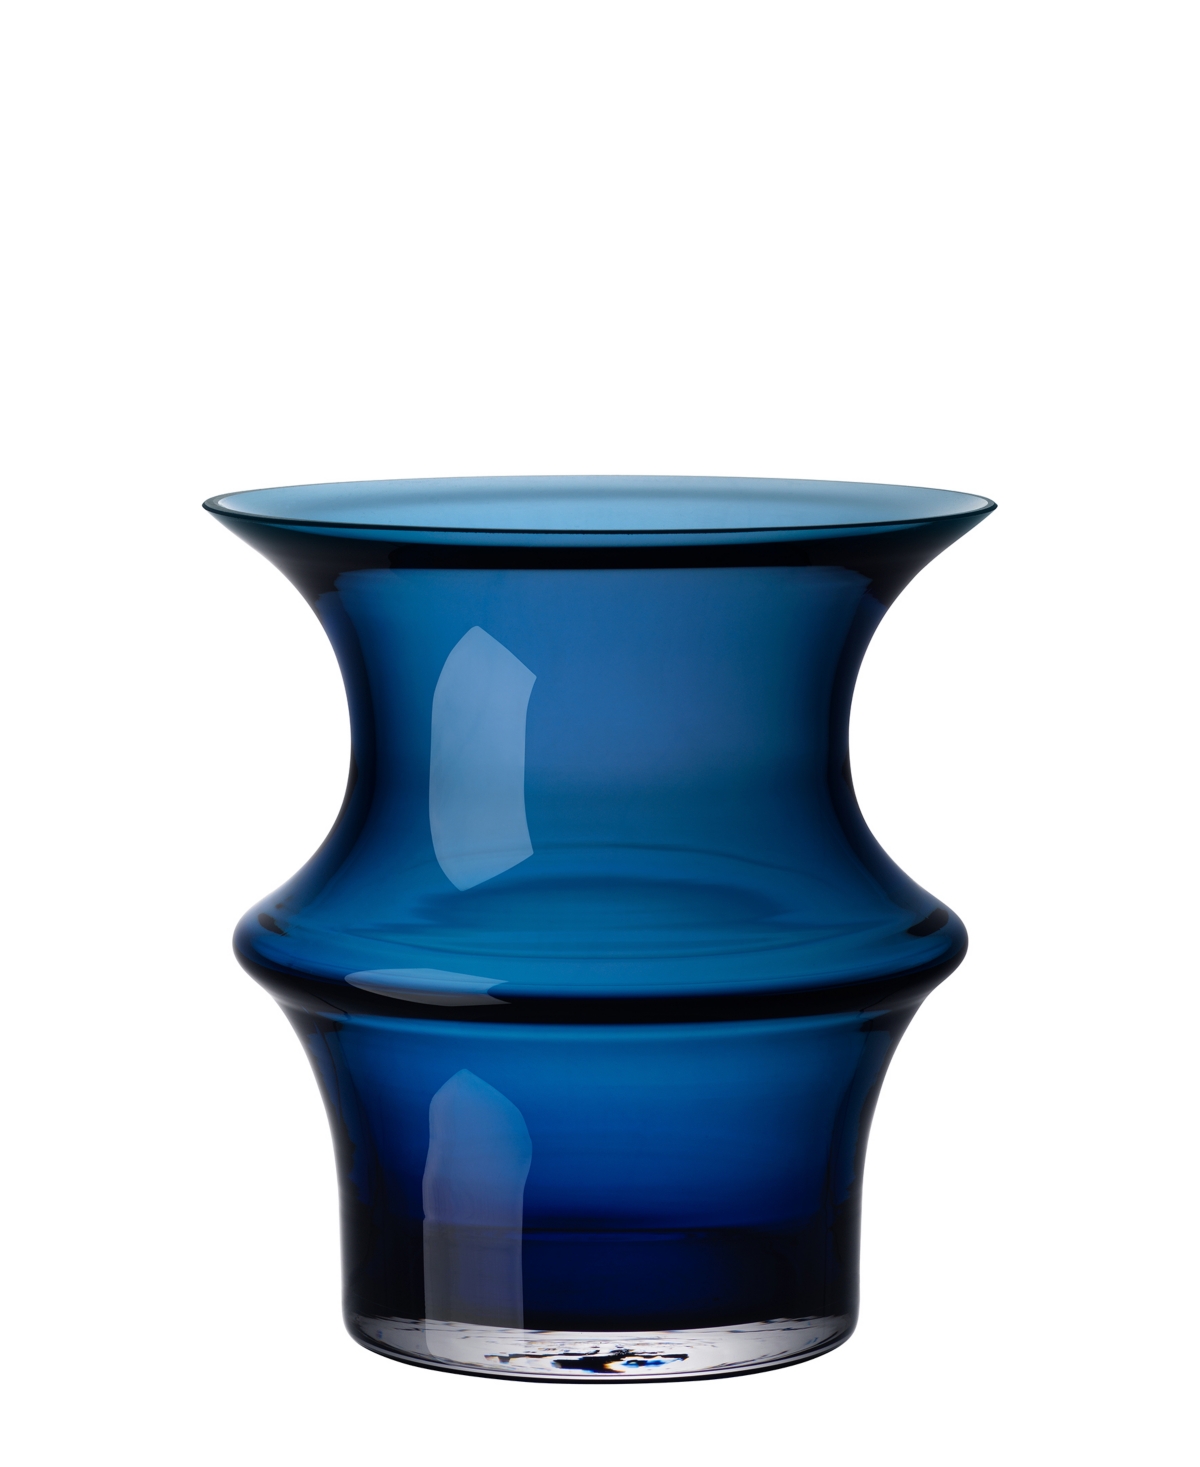 Kosta Boda Pagod Vase In Blue